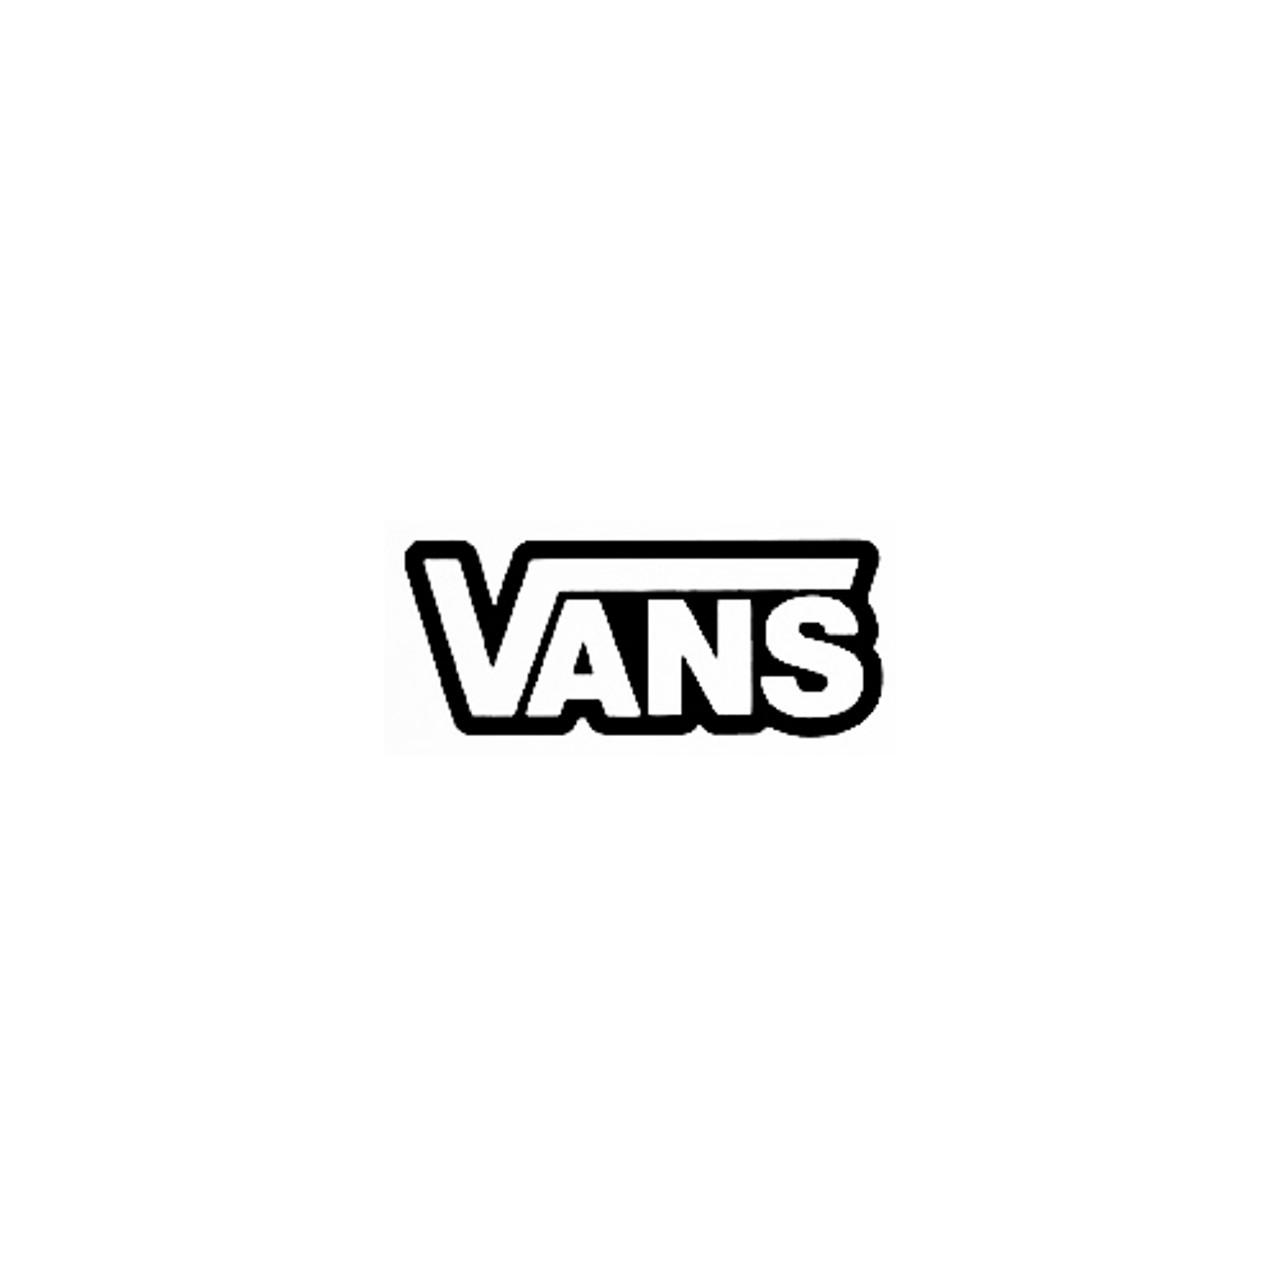 Vans Simple Bold Vinyl Decal